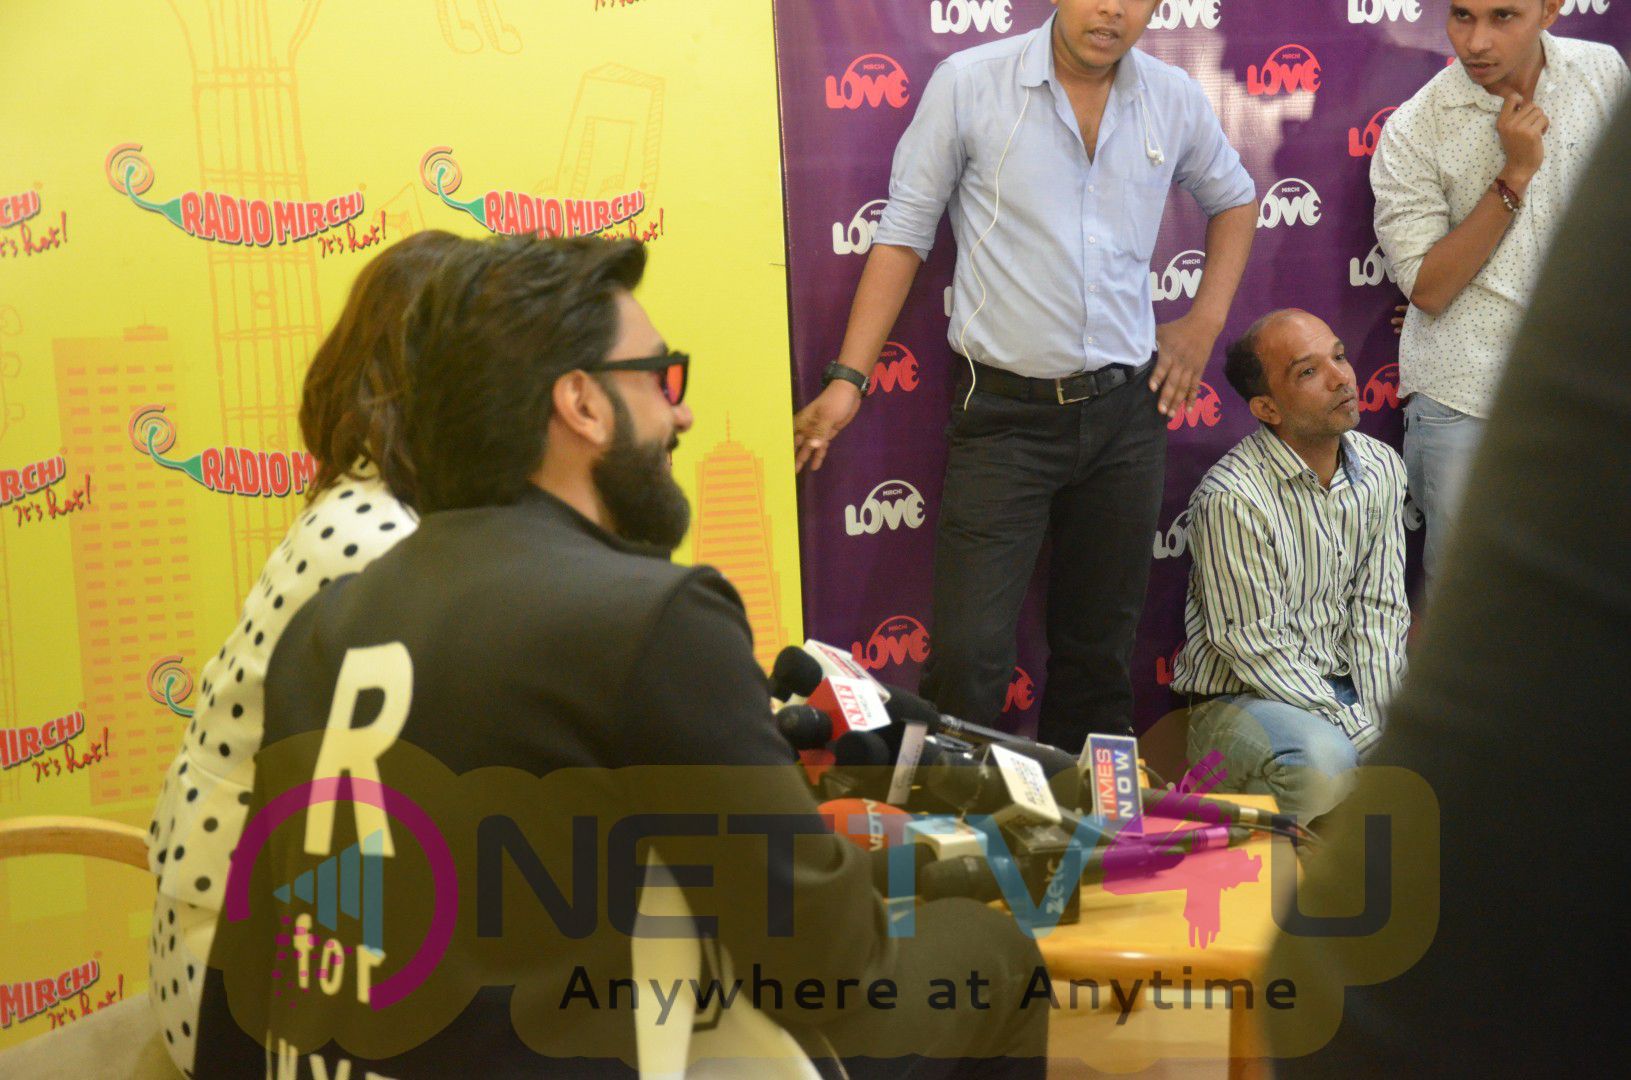 Ranveer Singh & Vaani Kapoor Befikre Promotions At Radio Mirchi  Cute Images Hindi Gallery